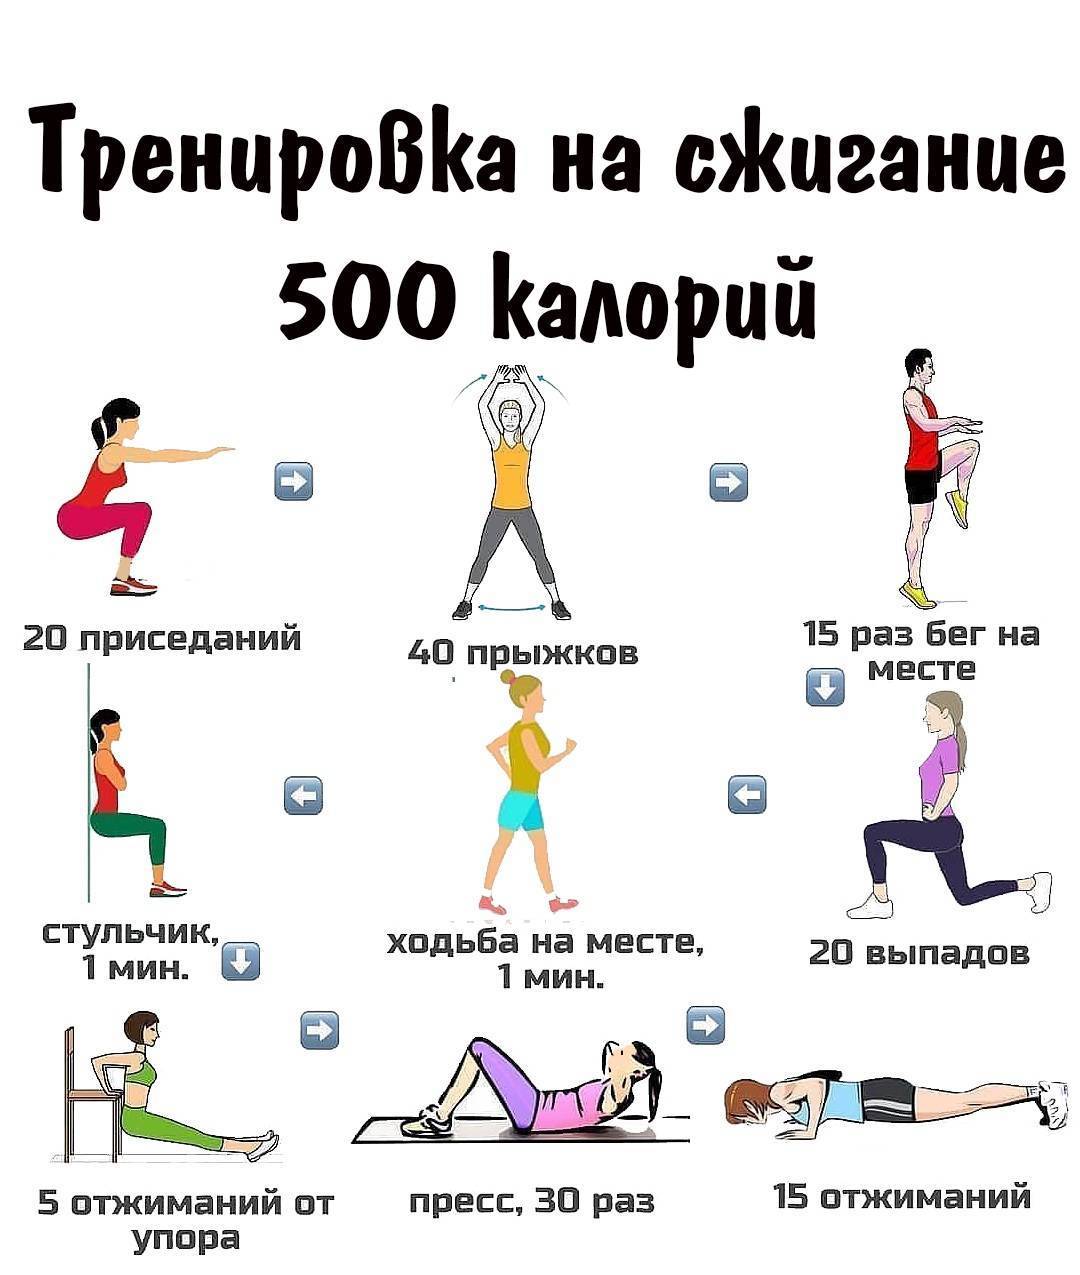 Кардионагрузки для похудения в тренажерном зале и в домашних условиях - allslim.ru